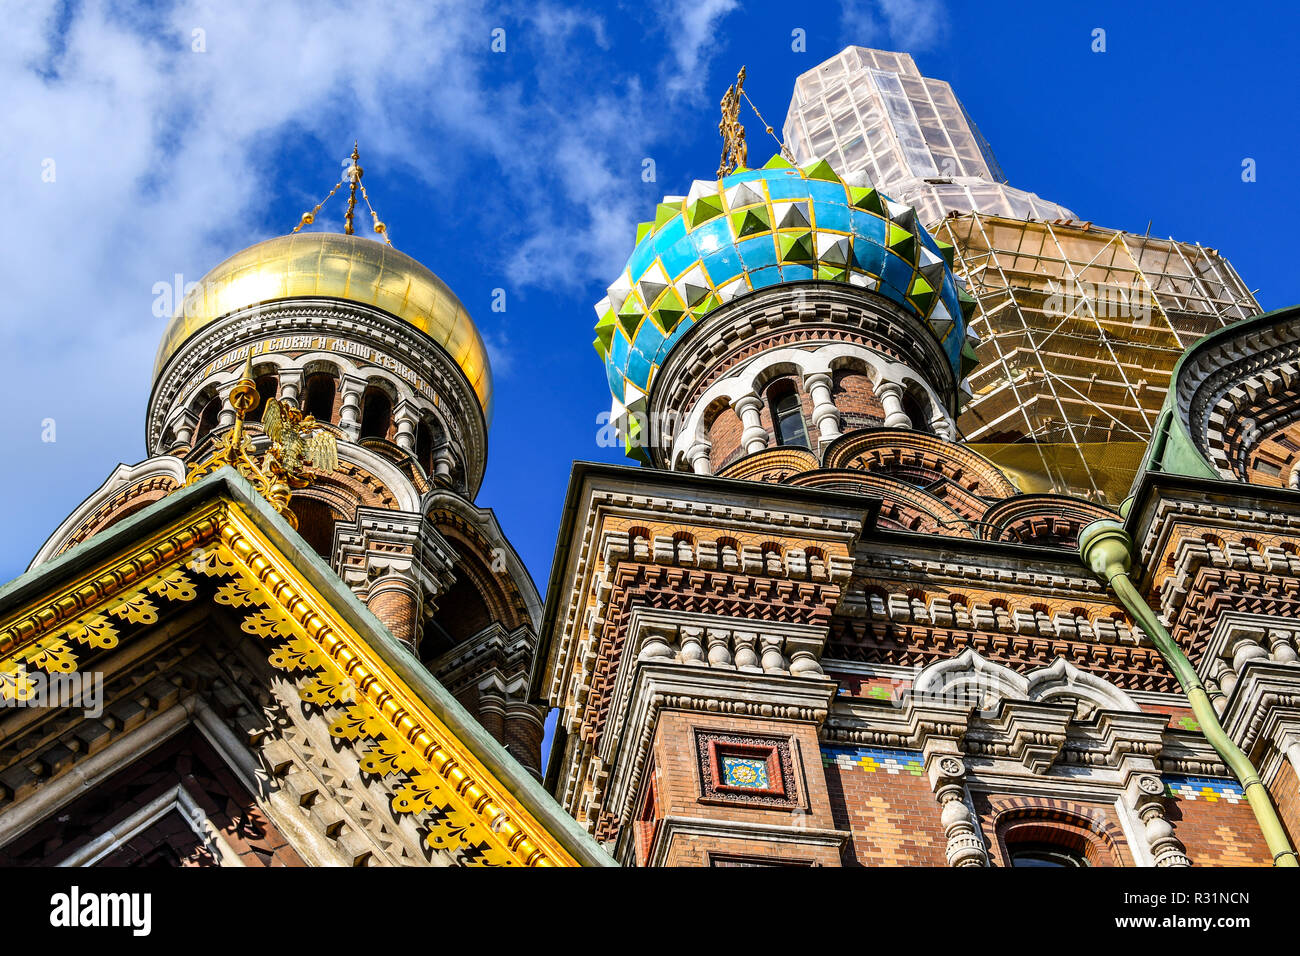 Les dômes oignon médiévale et façade de l'Église du Sauveur sur le Sang Versé à Saint-Pétersbourg, en Russie. Banque D'Images